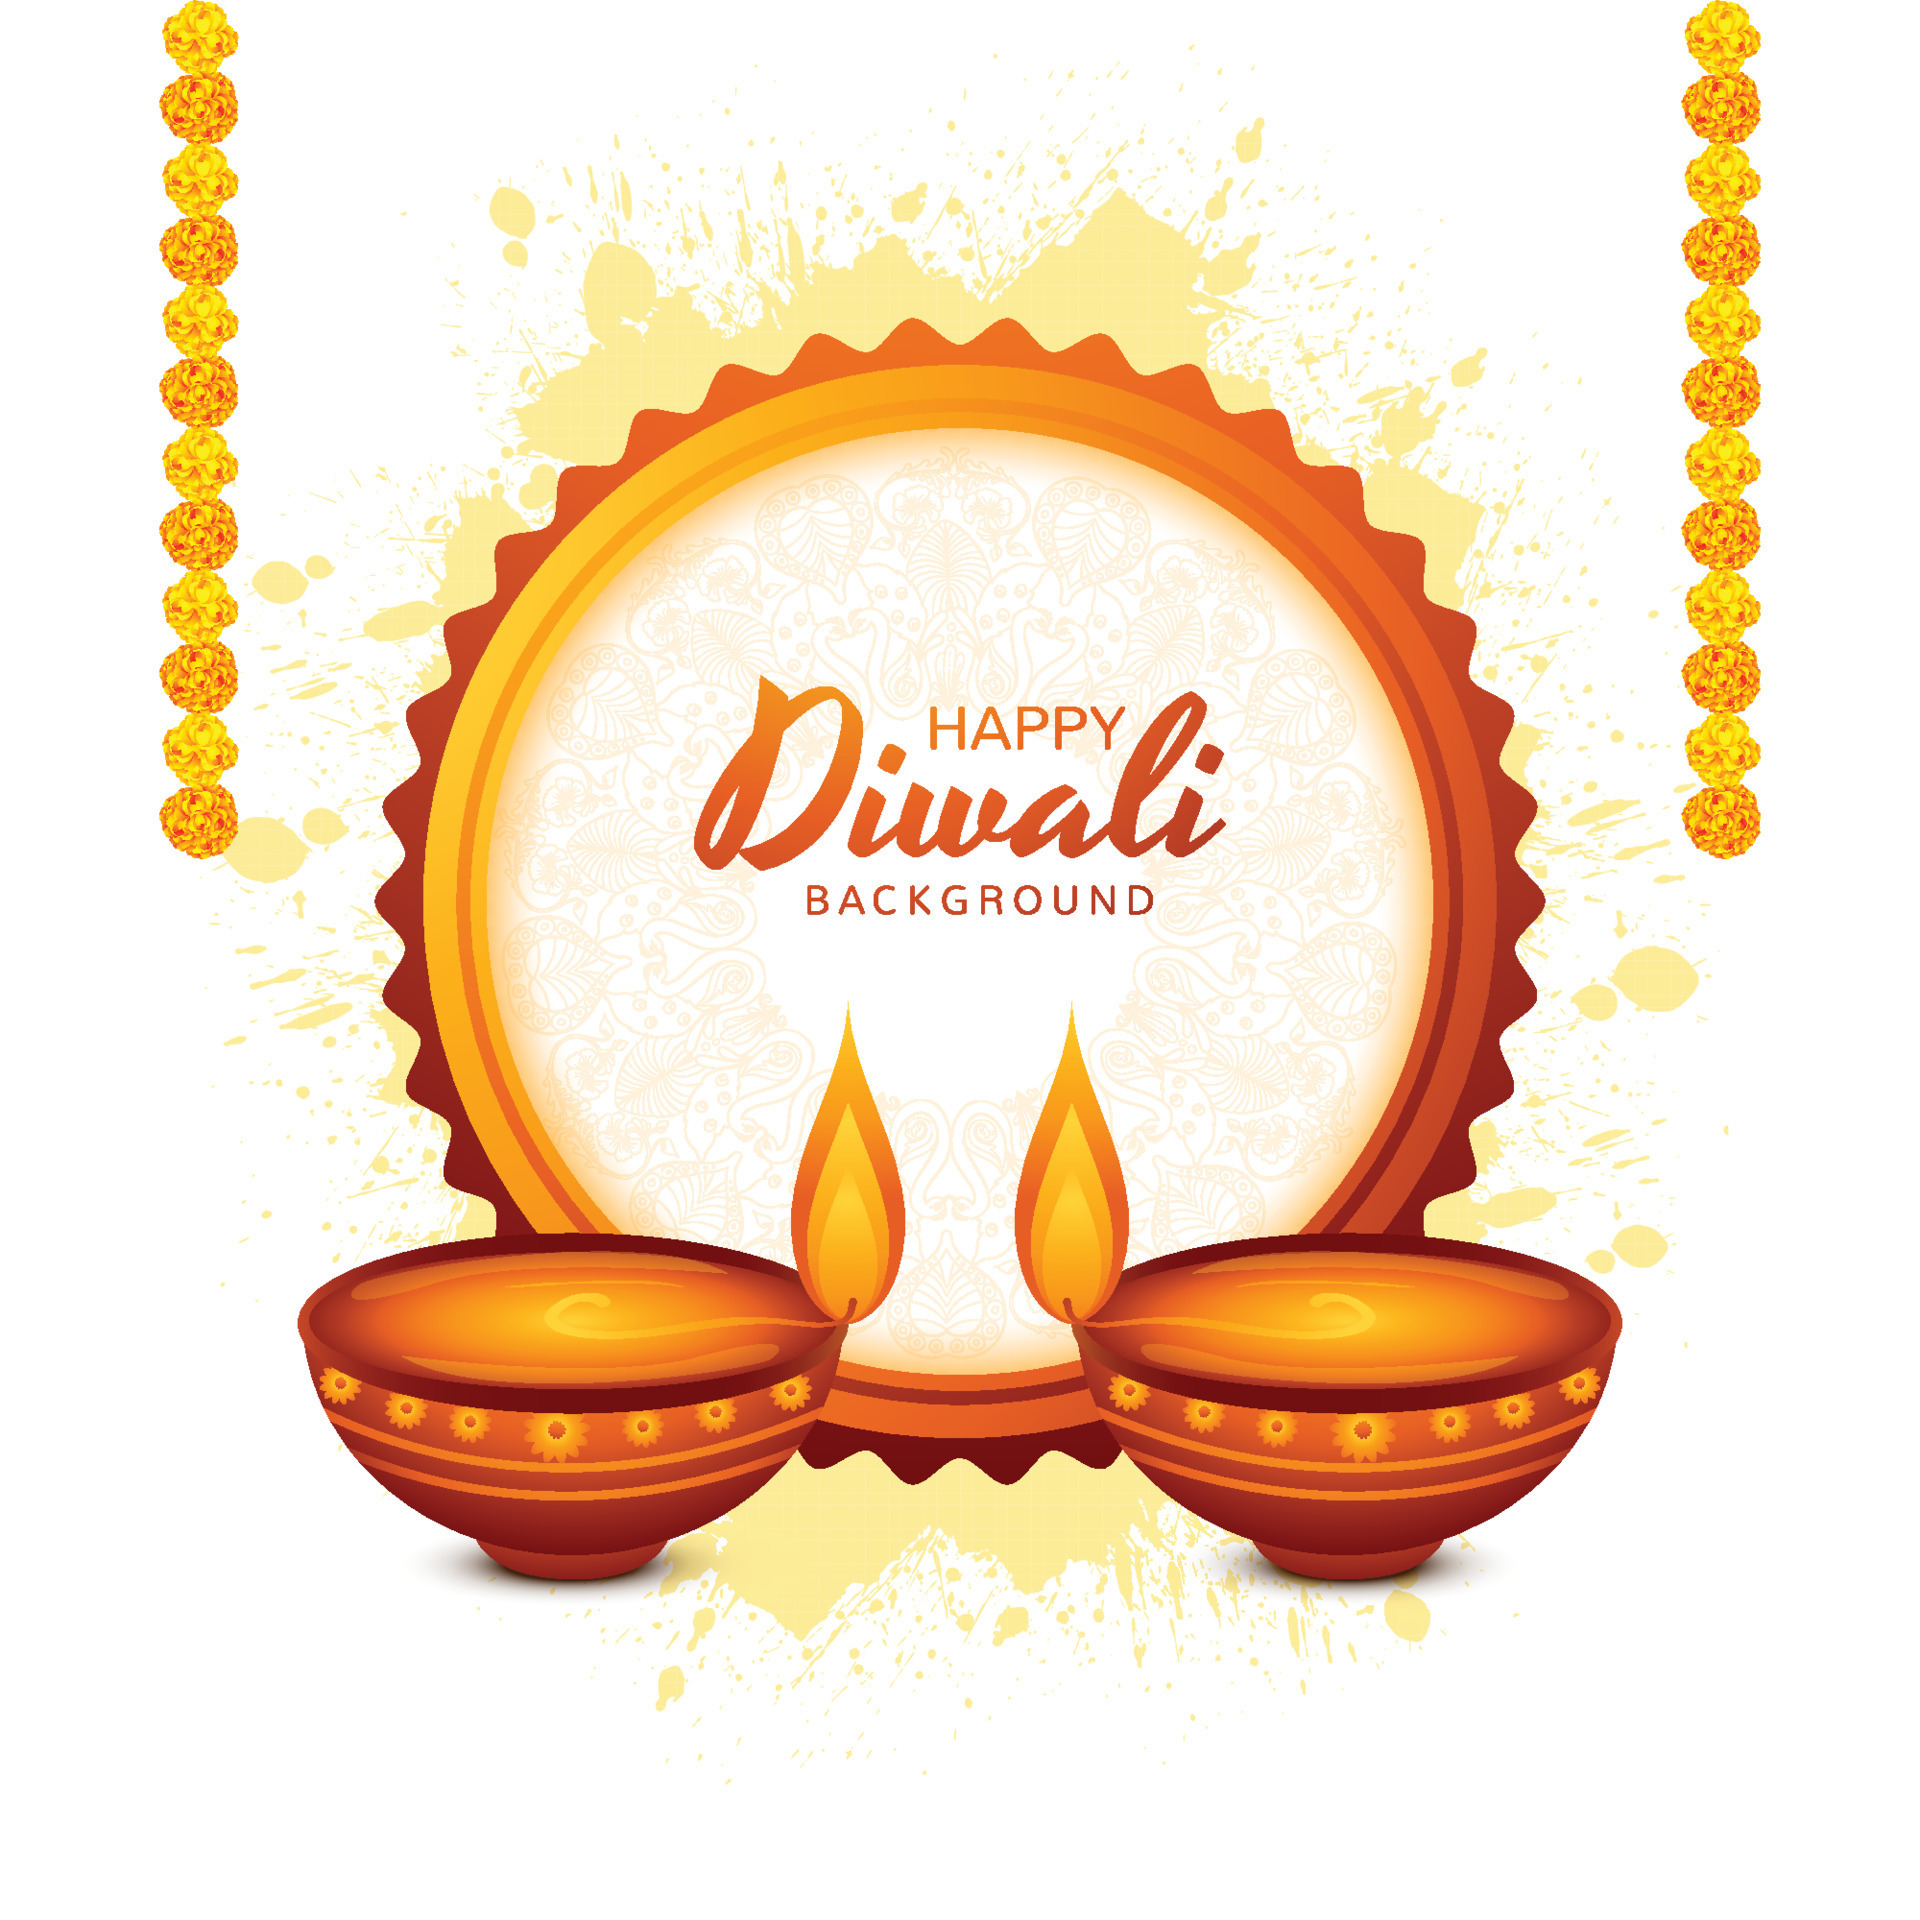 Những lá thư Diwali chứa đầy những lời chúc tốt đẹp, những thông điệp tình cảm, sự tri ân và lòng thành kính của những người thân yêu. Xem ảnh của chúng tôi và cảm nhận sử dụng những tấm thiệp ấn tượng này để gửi gắm lời chúc mừng đến những người mà bạn quan tâm.